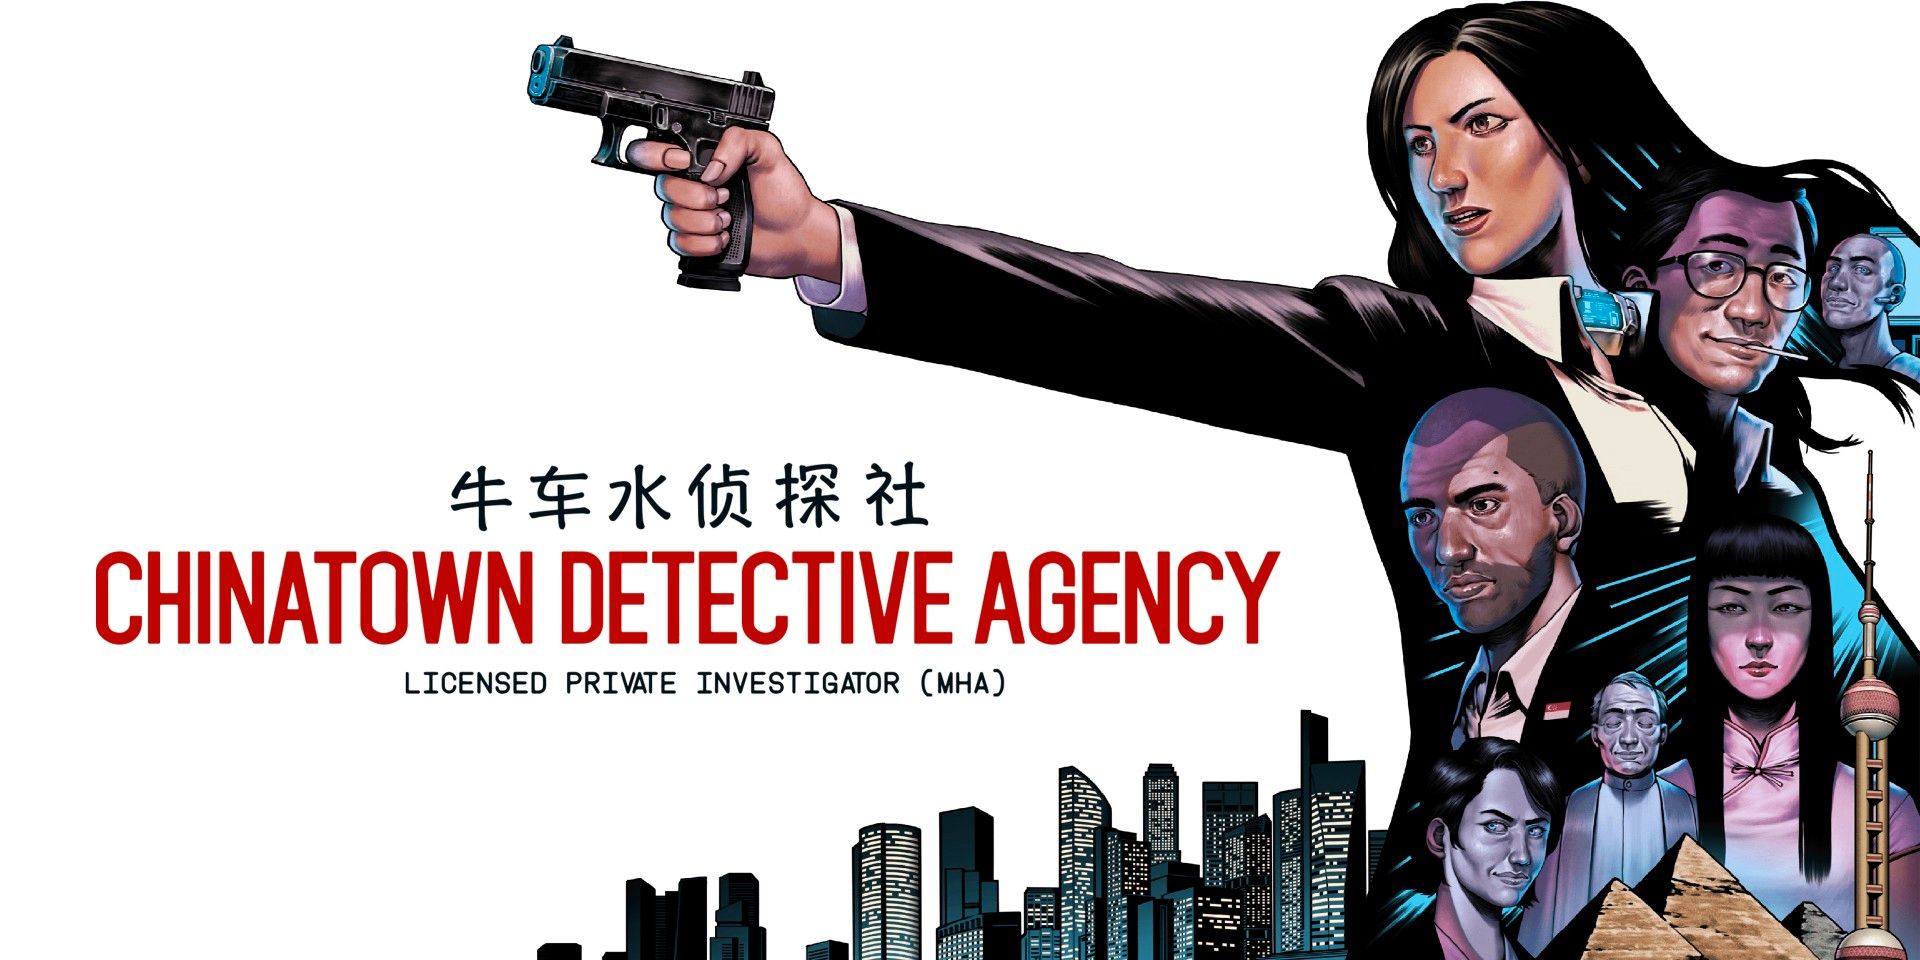 Revisión de la agencia de detectives de Chinatown: una brillante pero con errores Carmen Sandiego